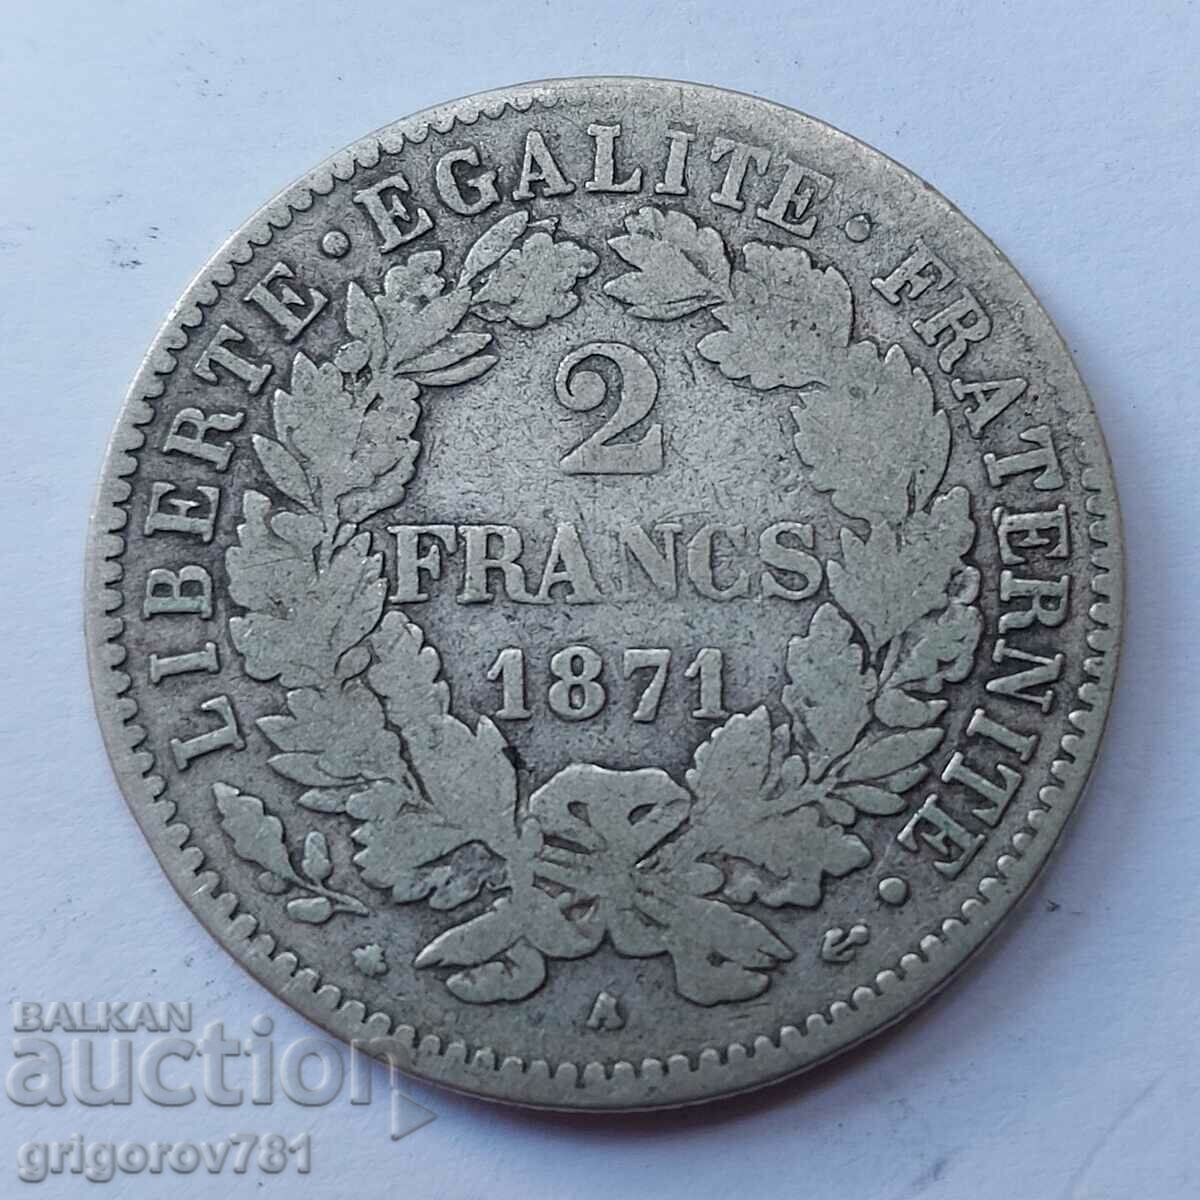 Ασημένιο 2 φράγκα Γαλλία 1871 Α - ασημένιο νόμισμα №29